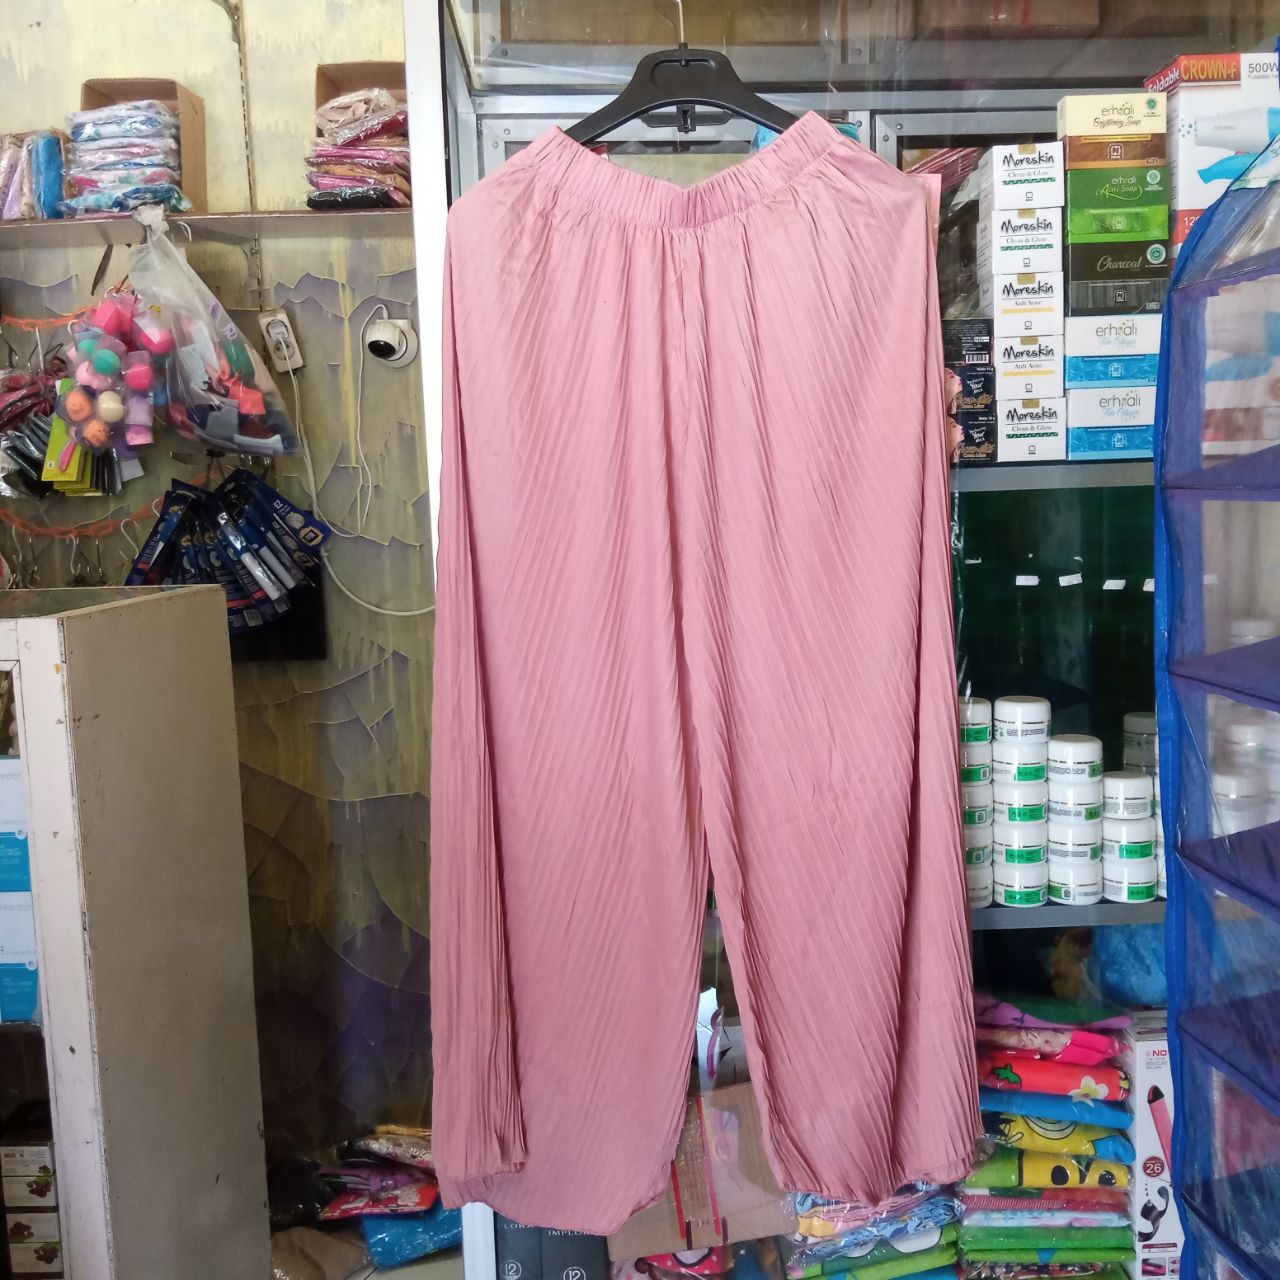 ini adalah Kulot Plisket Pink, size: Lingkar Pinggang 80-110 cm Panjang Celana 87 cm , material: Jersey, color: Pink, brand: Bajuwanitaindonesia, age_group: all ages, gender: female